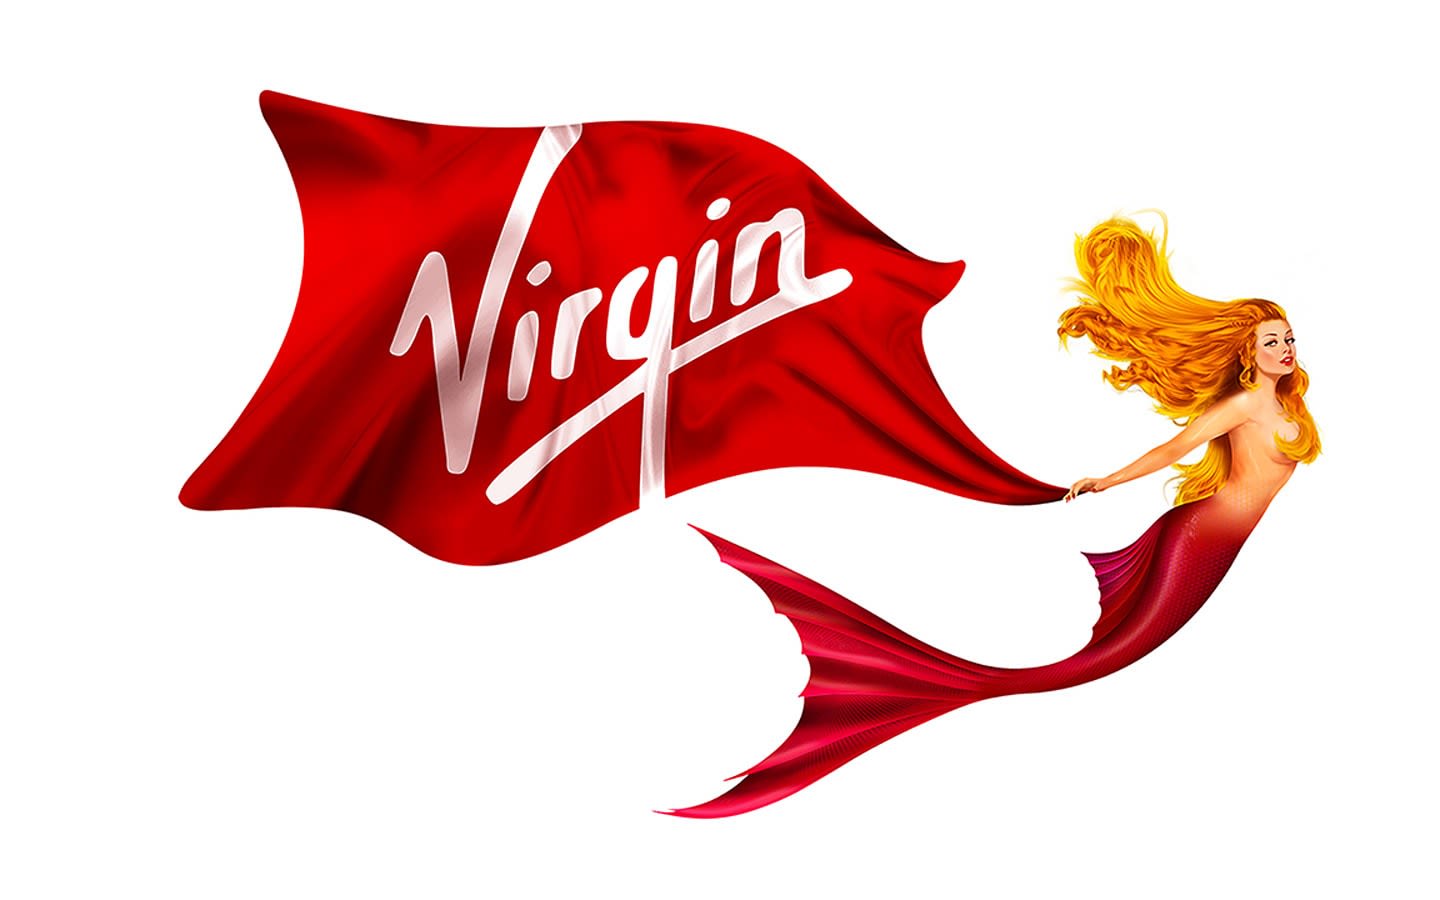 Virgin Voyages Scarlet Lady mermaid icon